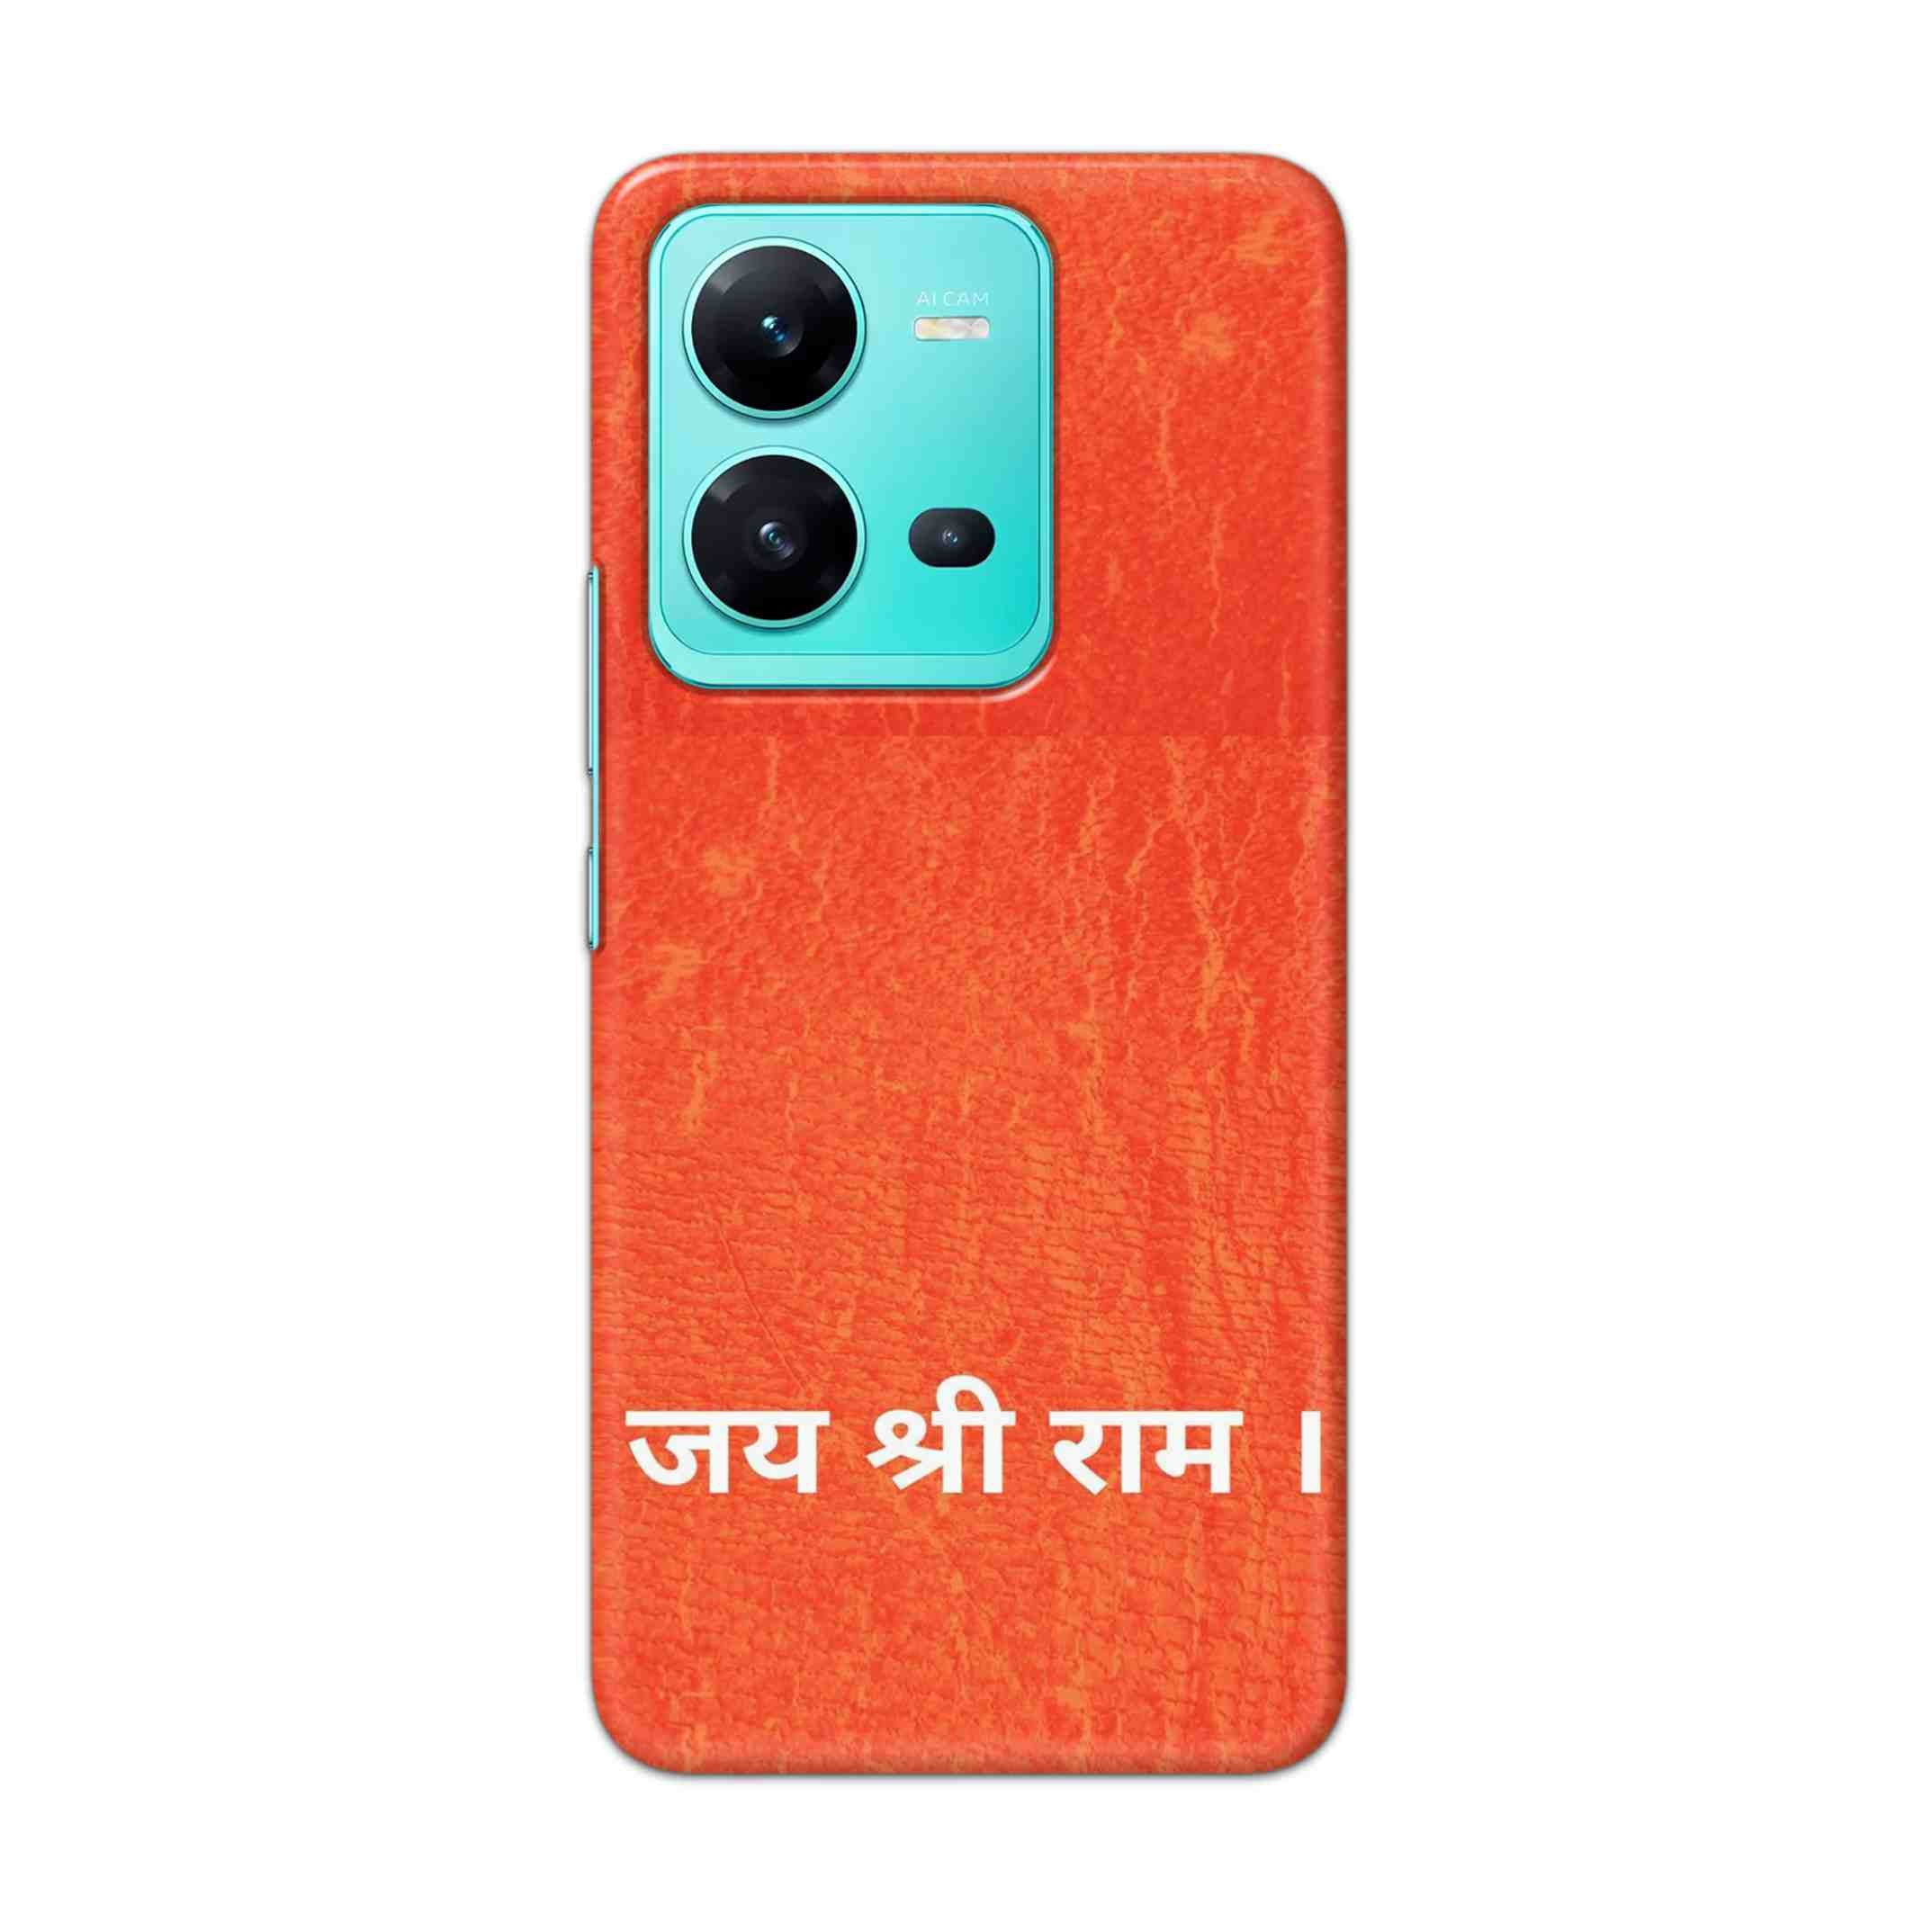 Buy Jai Shree Ram Hard Back Mobile Phone Case Cover For Vivo V25 Online